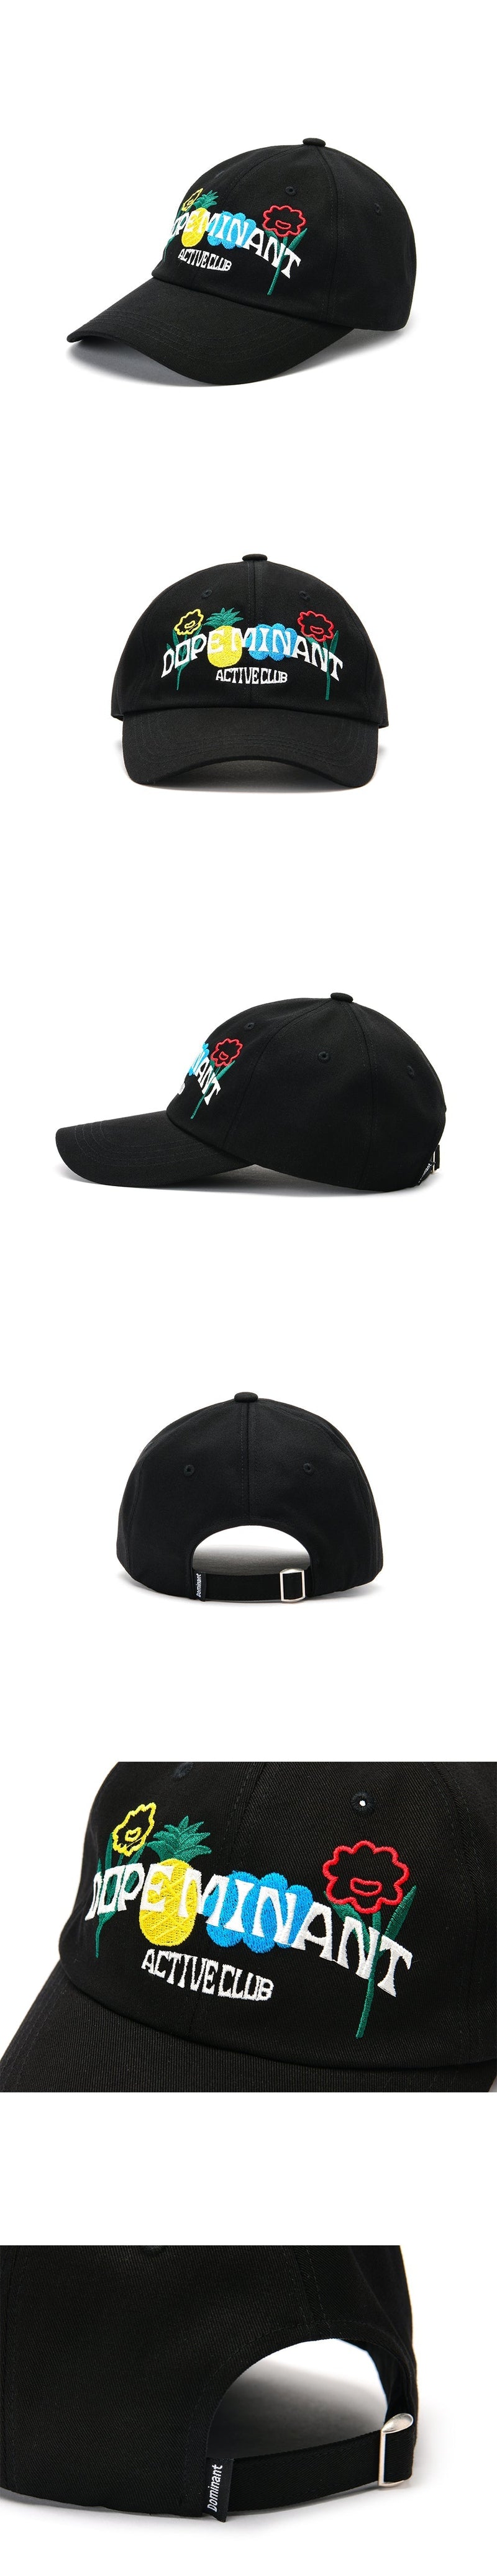 フルーツボールキャップ/DOMINANT UNISEX FRUIT BALL CAP_BLACK